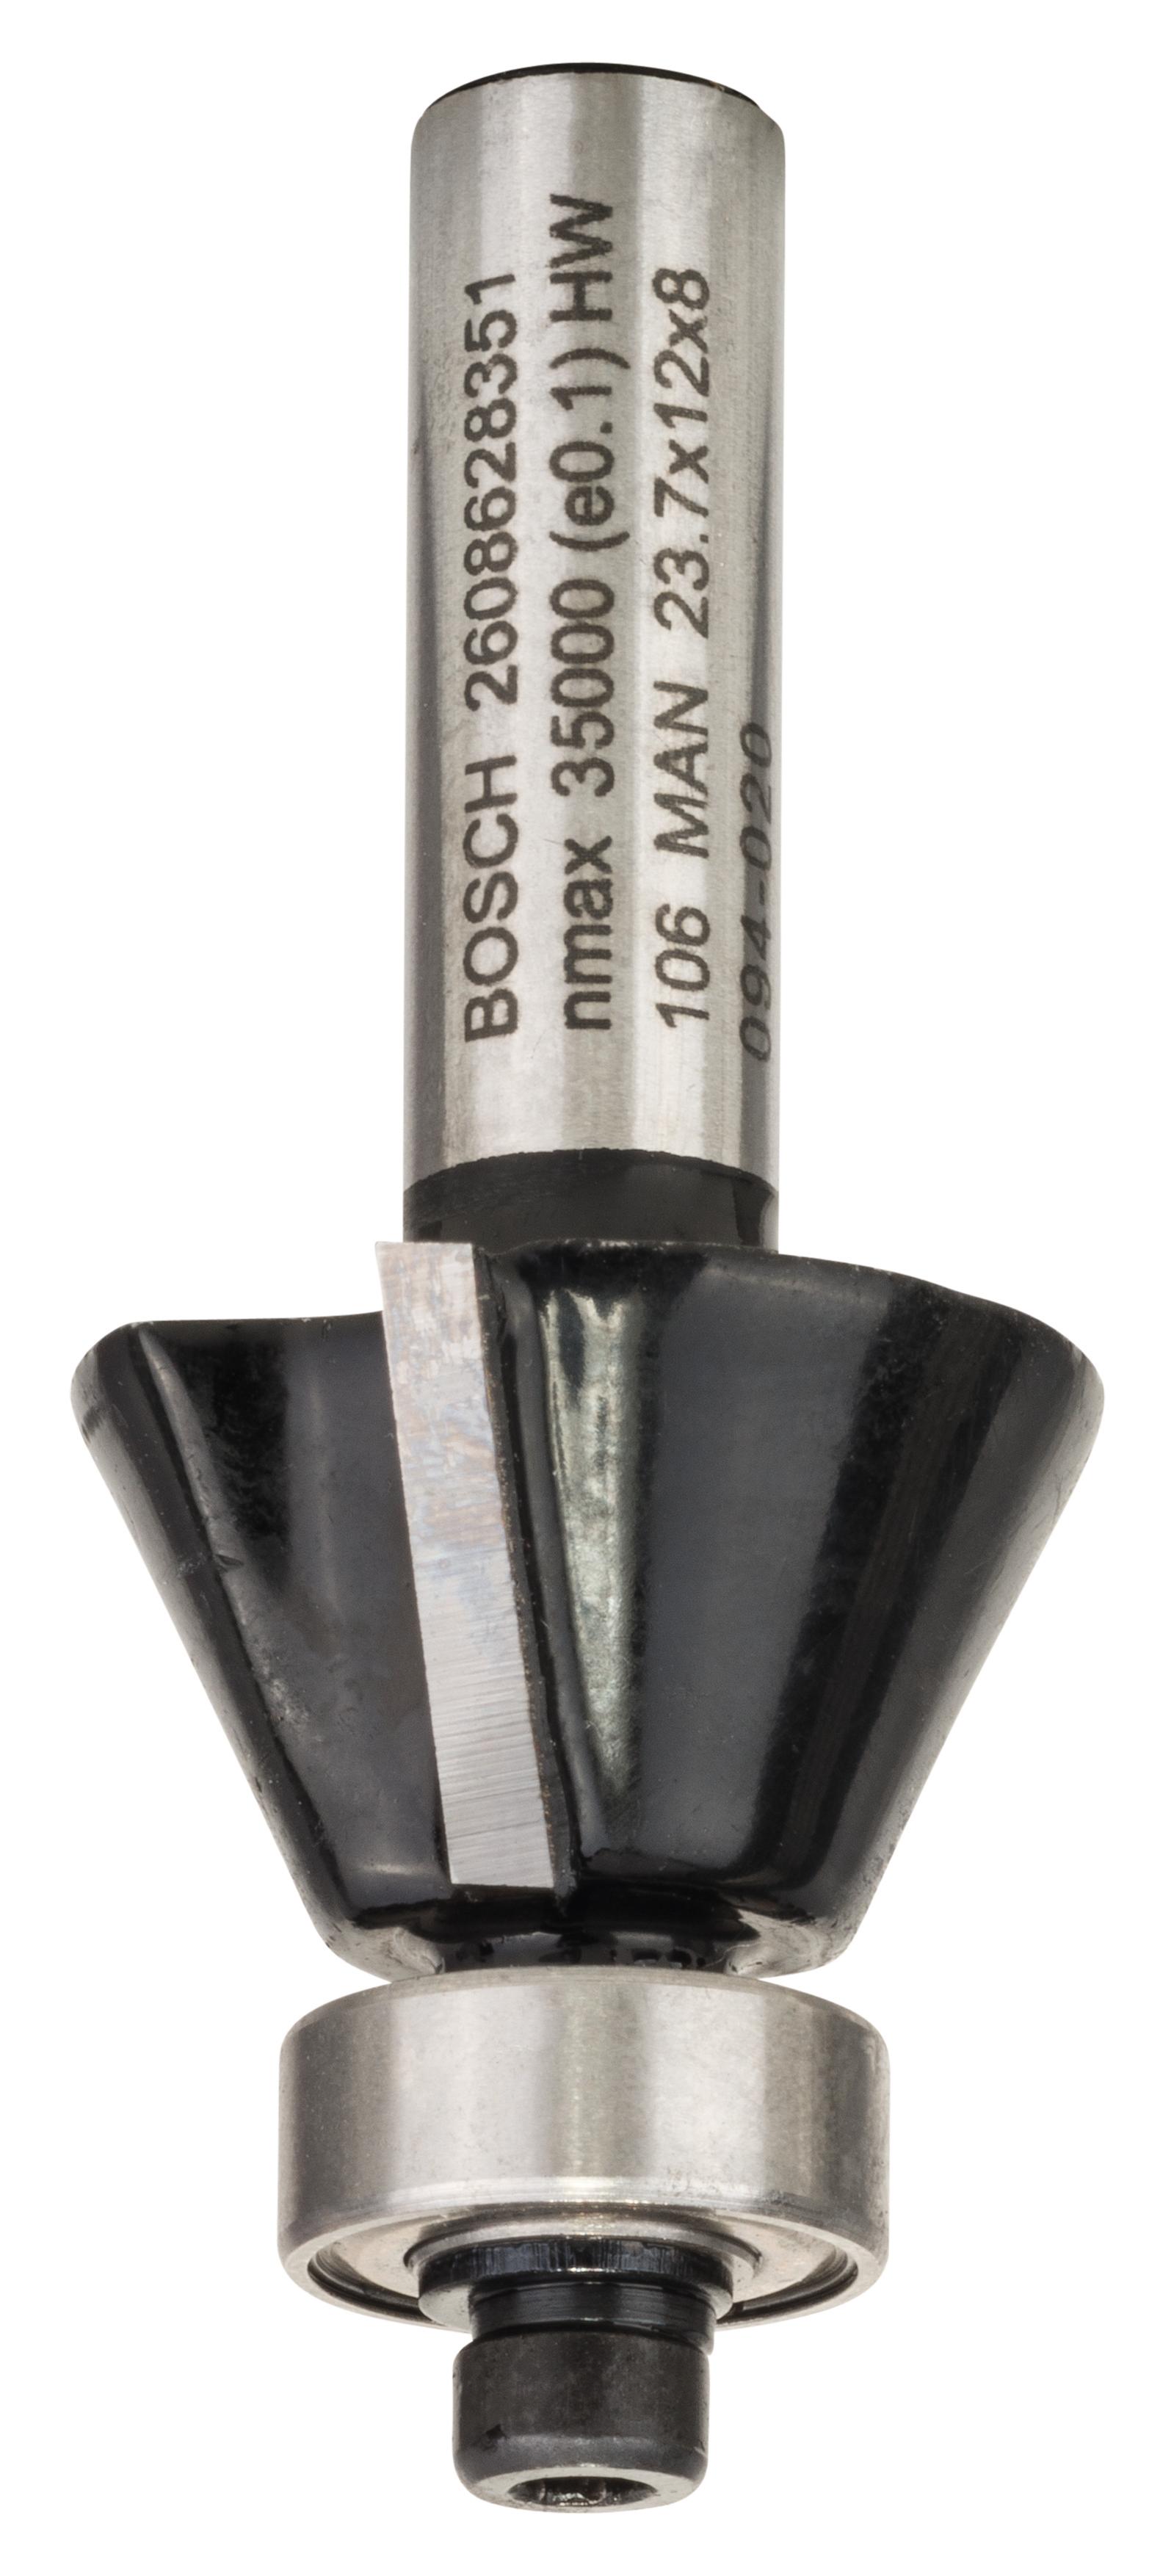 Bosch Glodalo za skošavanje ivica / glodalo za glodanje uz površinu 2608628351, 8 mm, D1 23,7 mm, B 5,5 mm, L 12 mm, G 54 mm, 25°